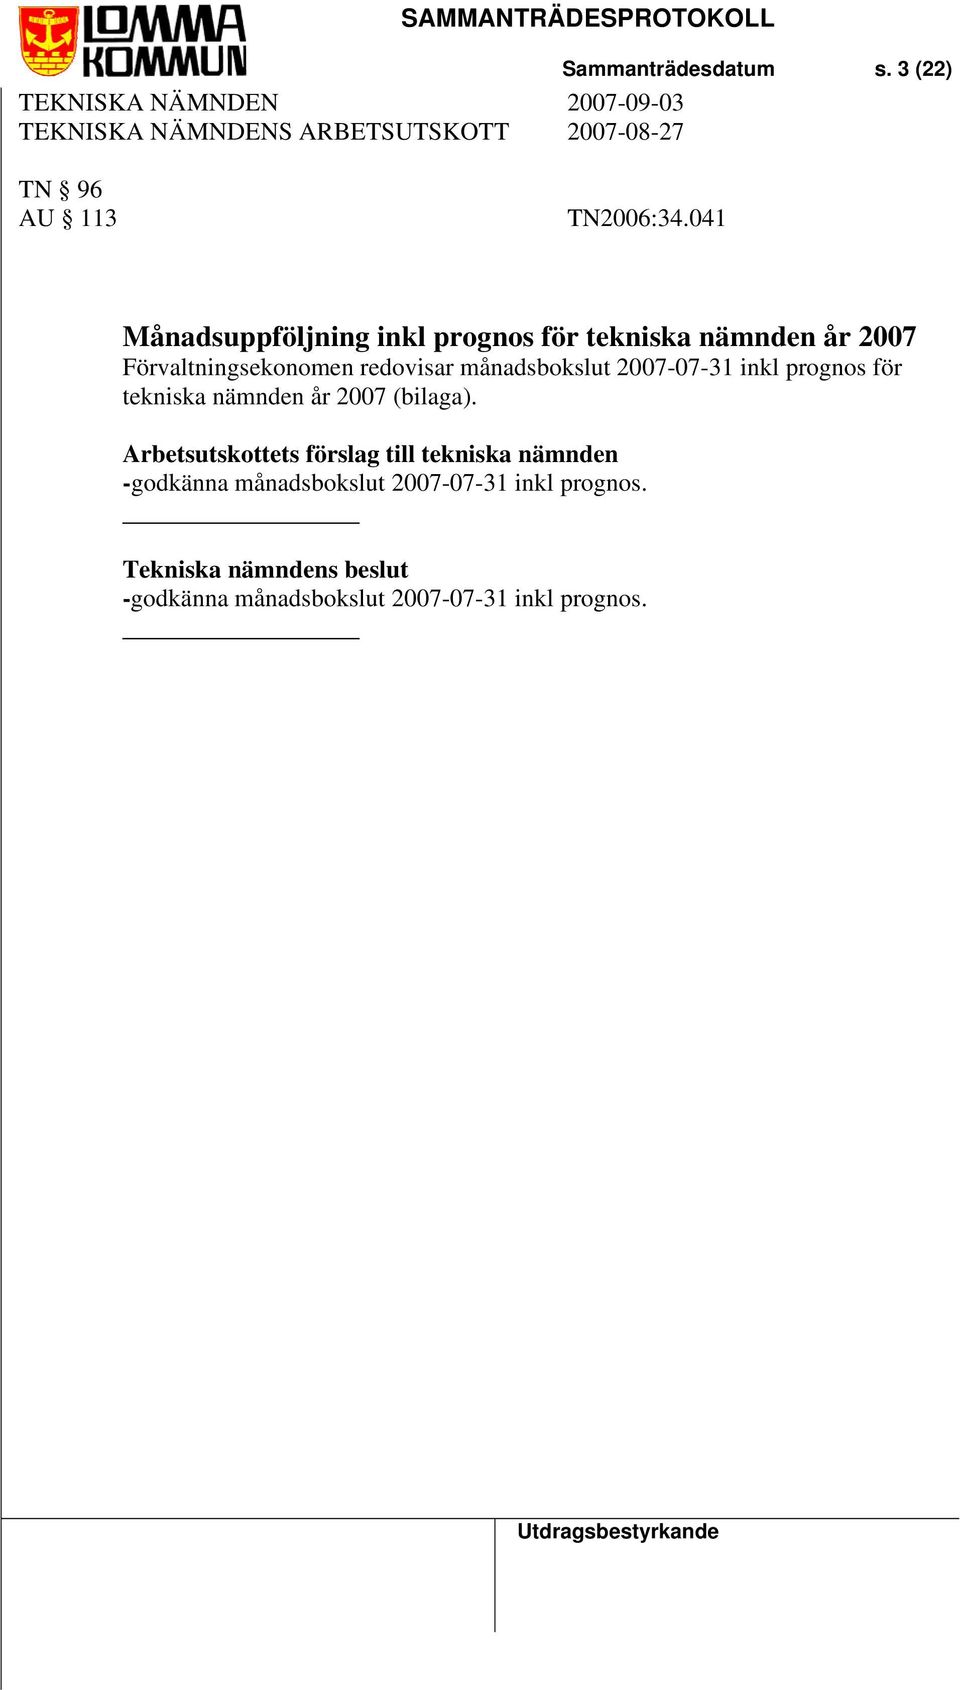 Förvaltningsekonomen redovisar månadsbokslut 2007-07-31 inkl prognos för